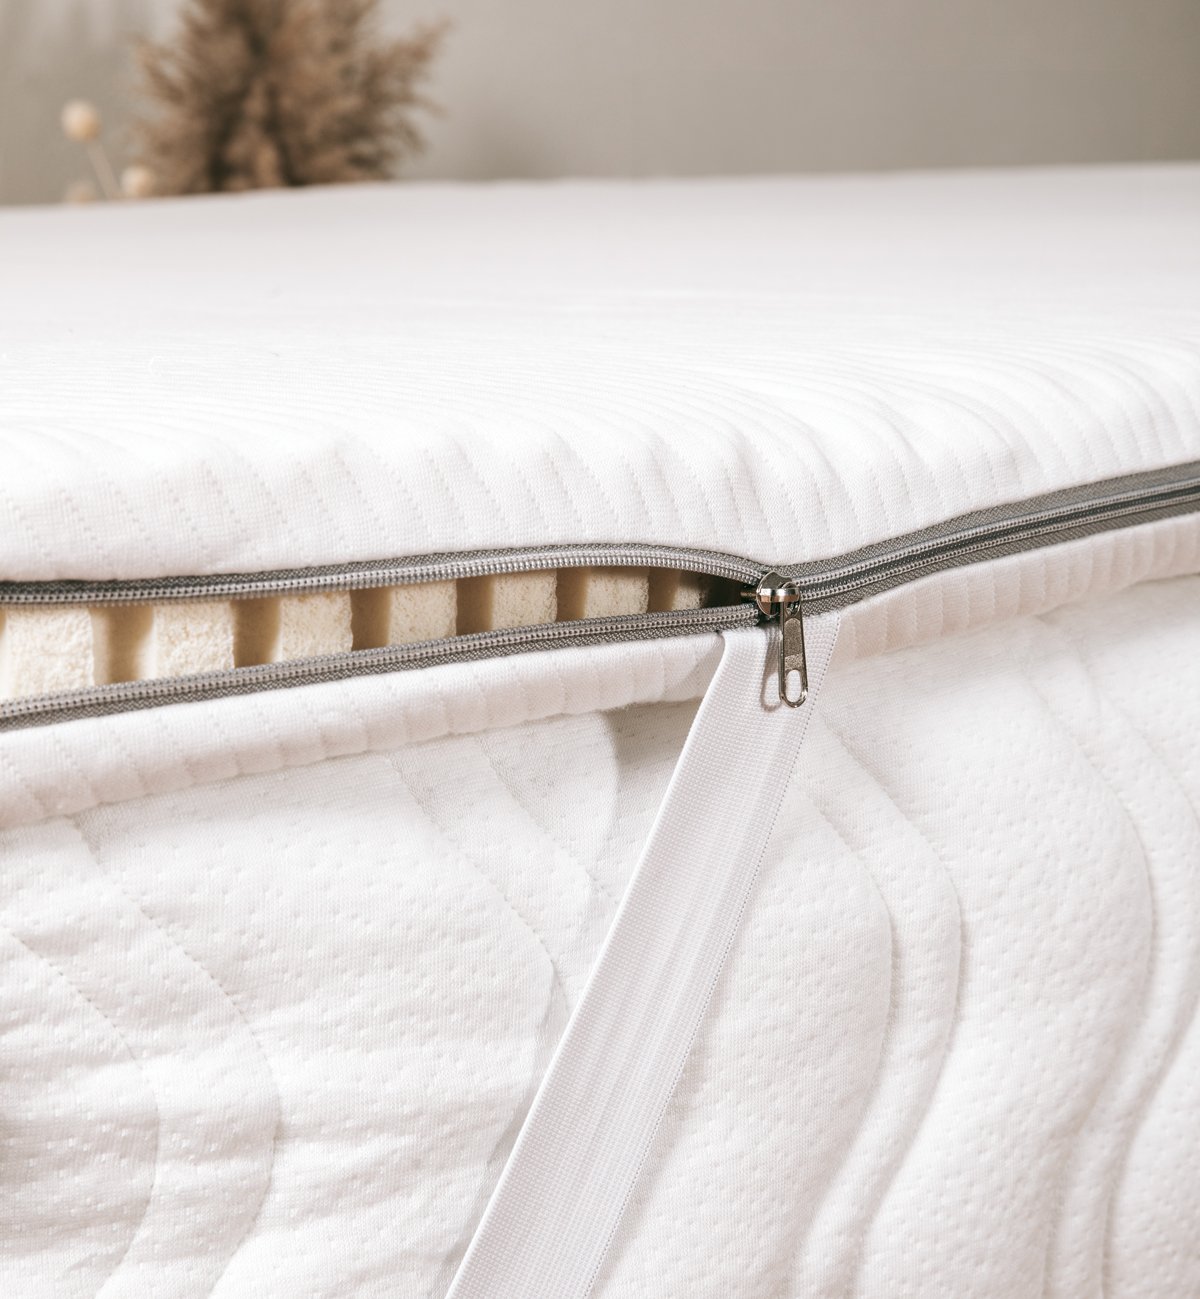 Capa de colchão em látex natural para camas de casal, uma solução ideal para aumentar o conforto do seu colchão